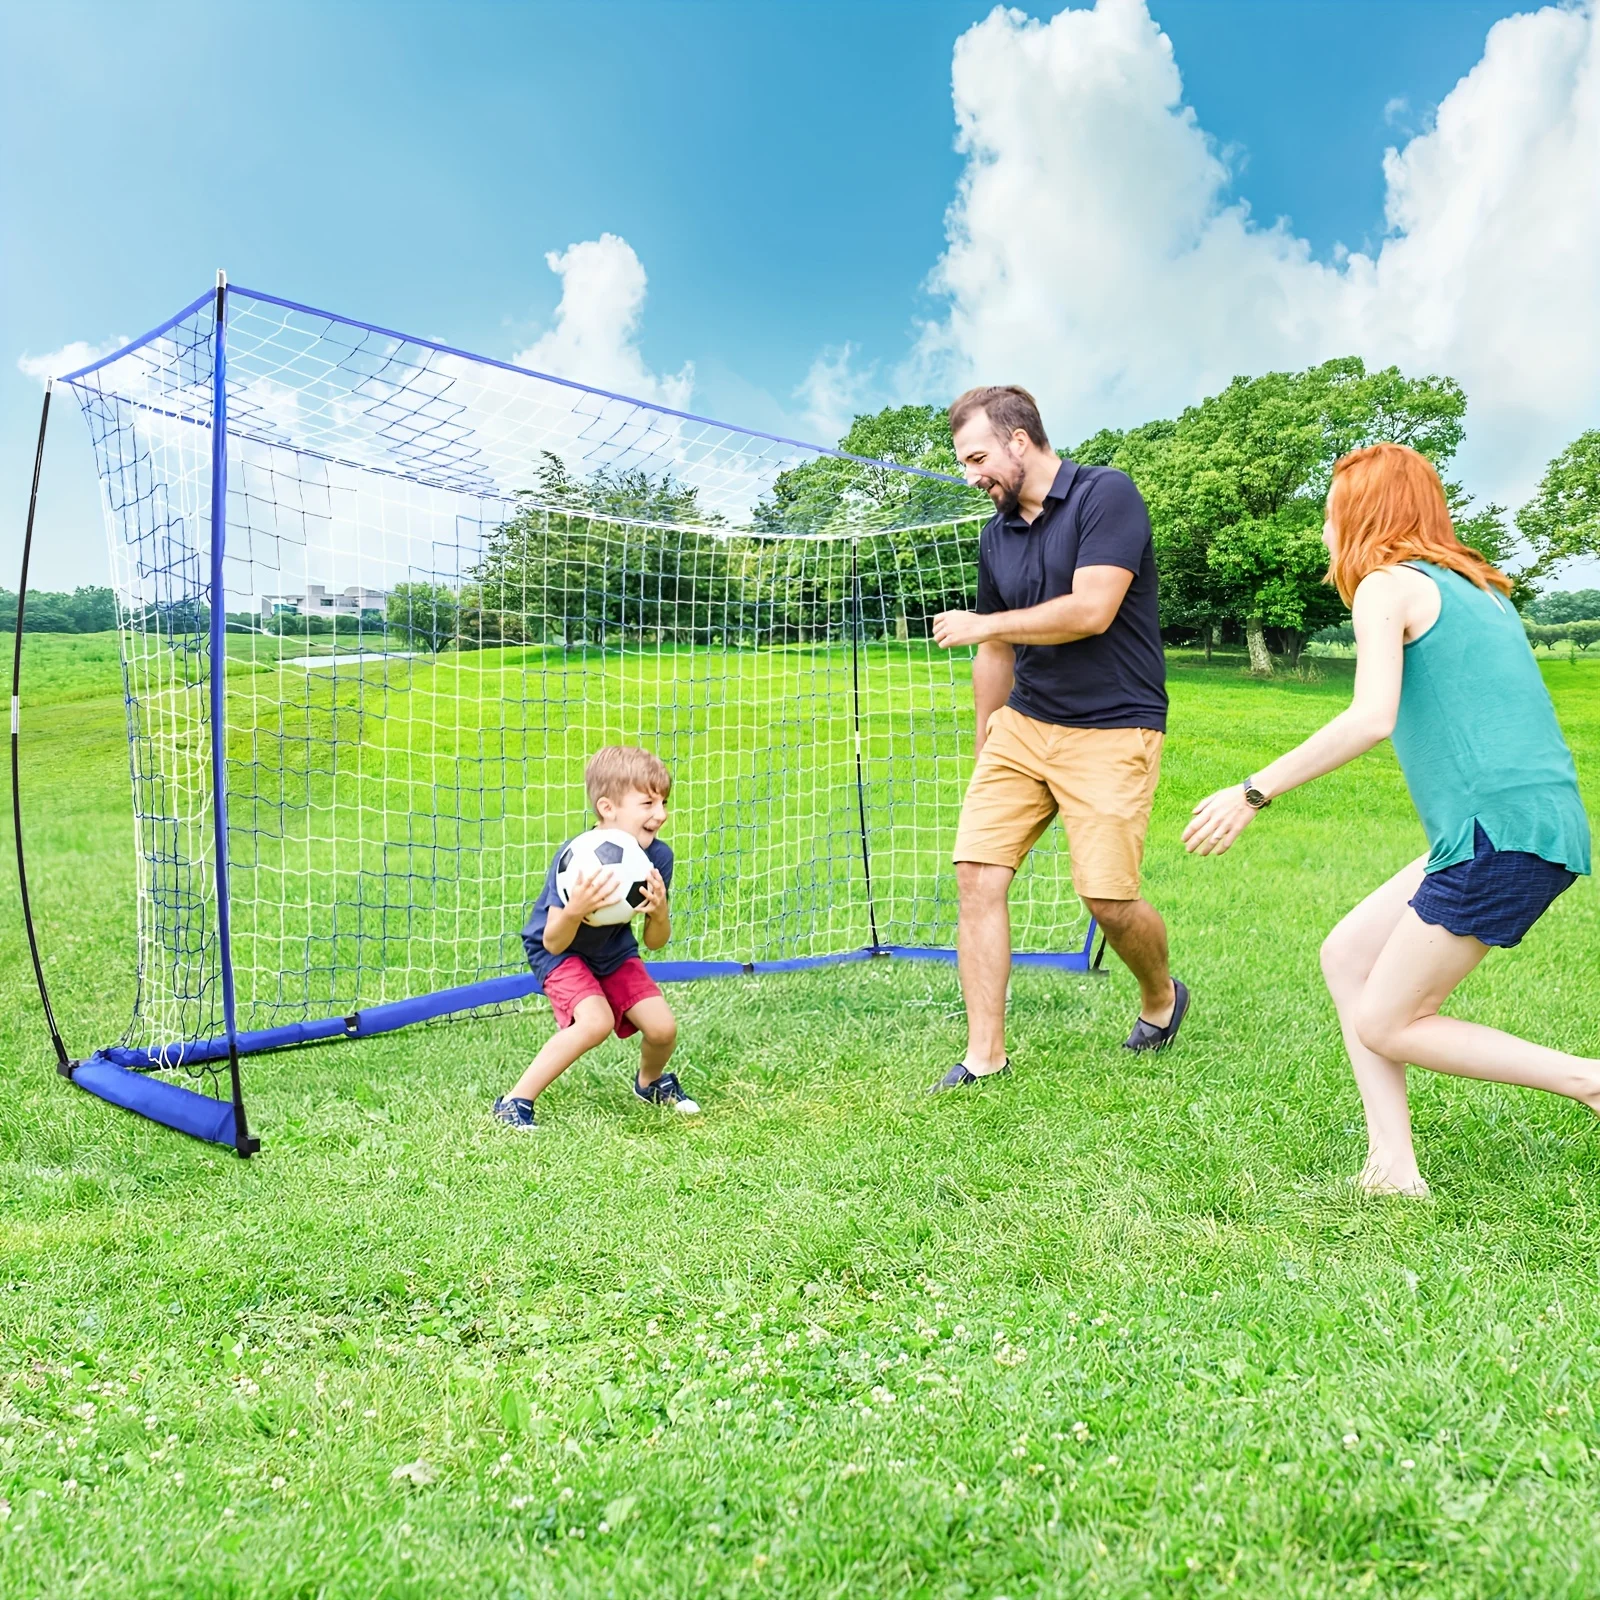 

12 x 6 ft Portable Backyard Soccer Goal Net, Pop Up Soccer Nets for Teens/Adults, Quick Set-Up Soccer Net for Backyard